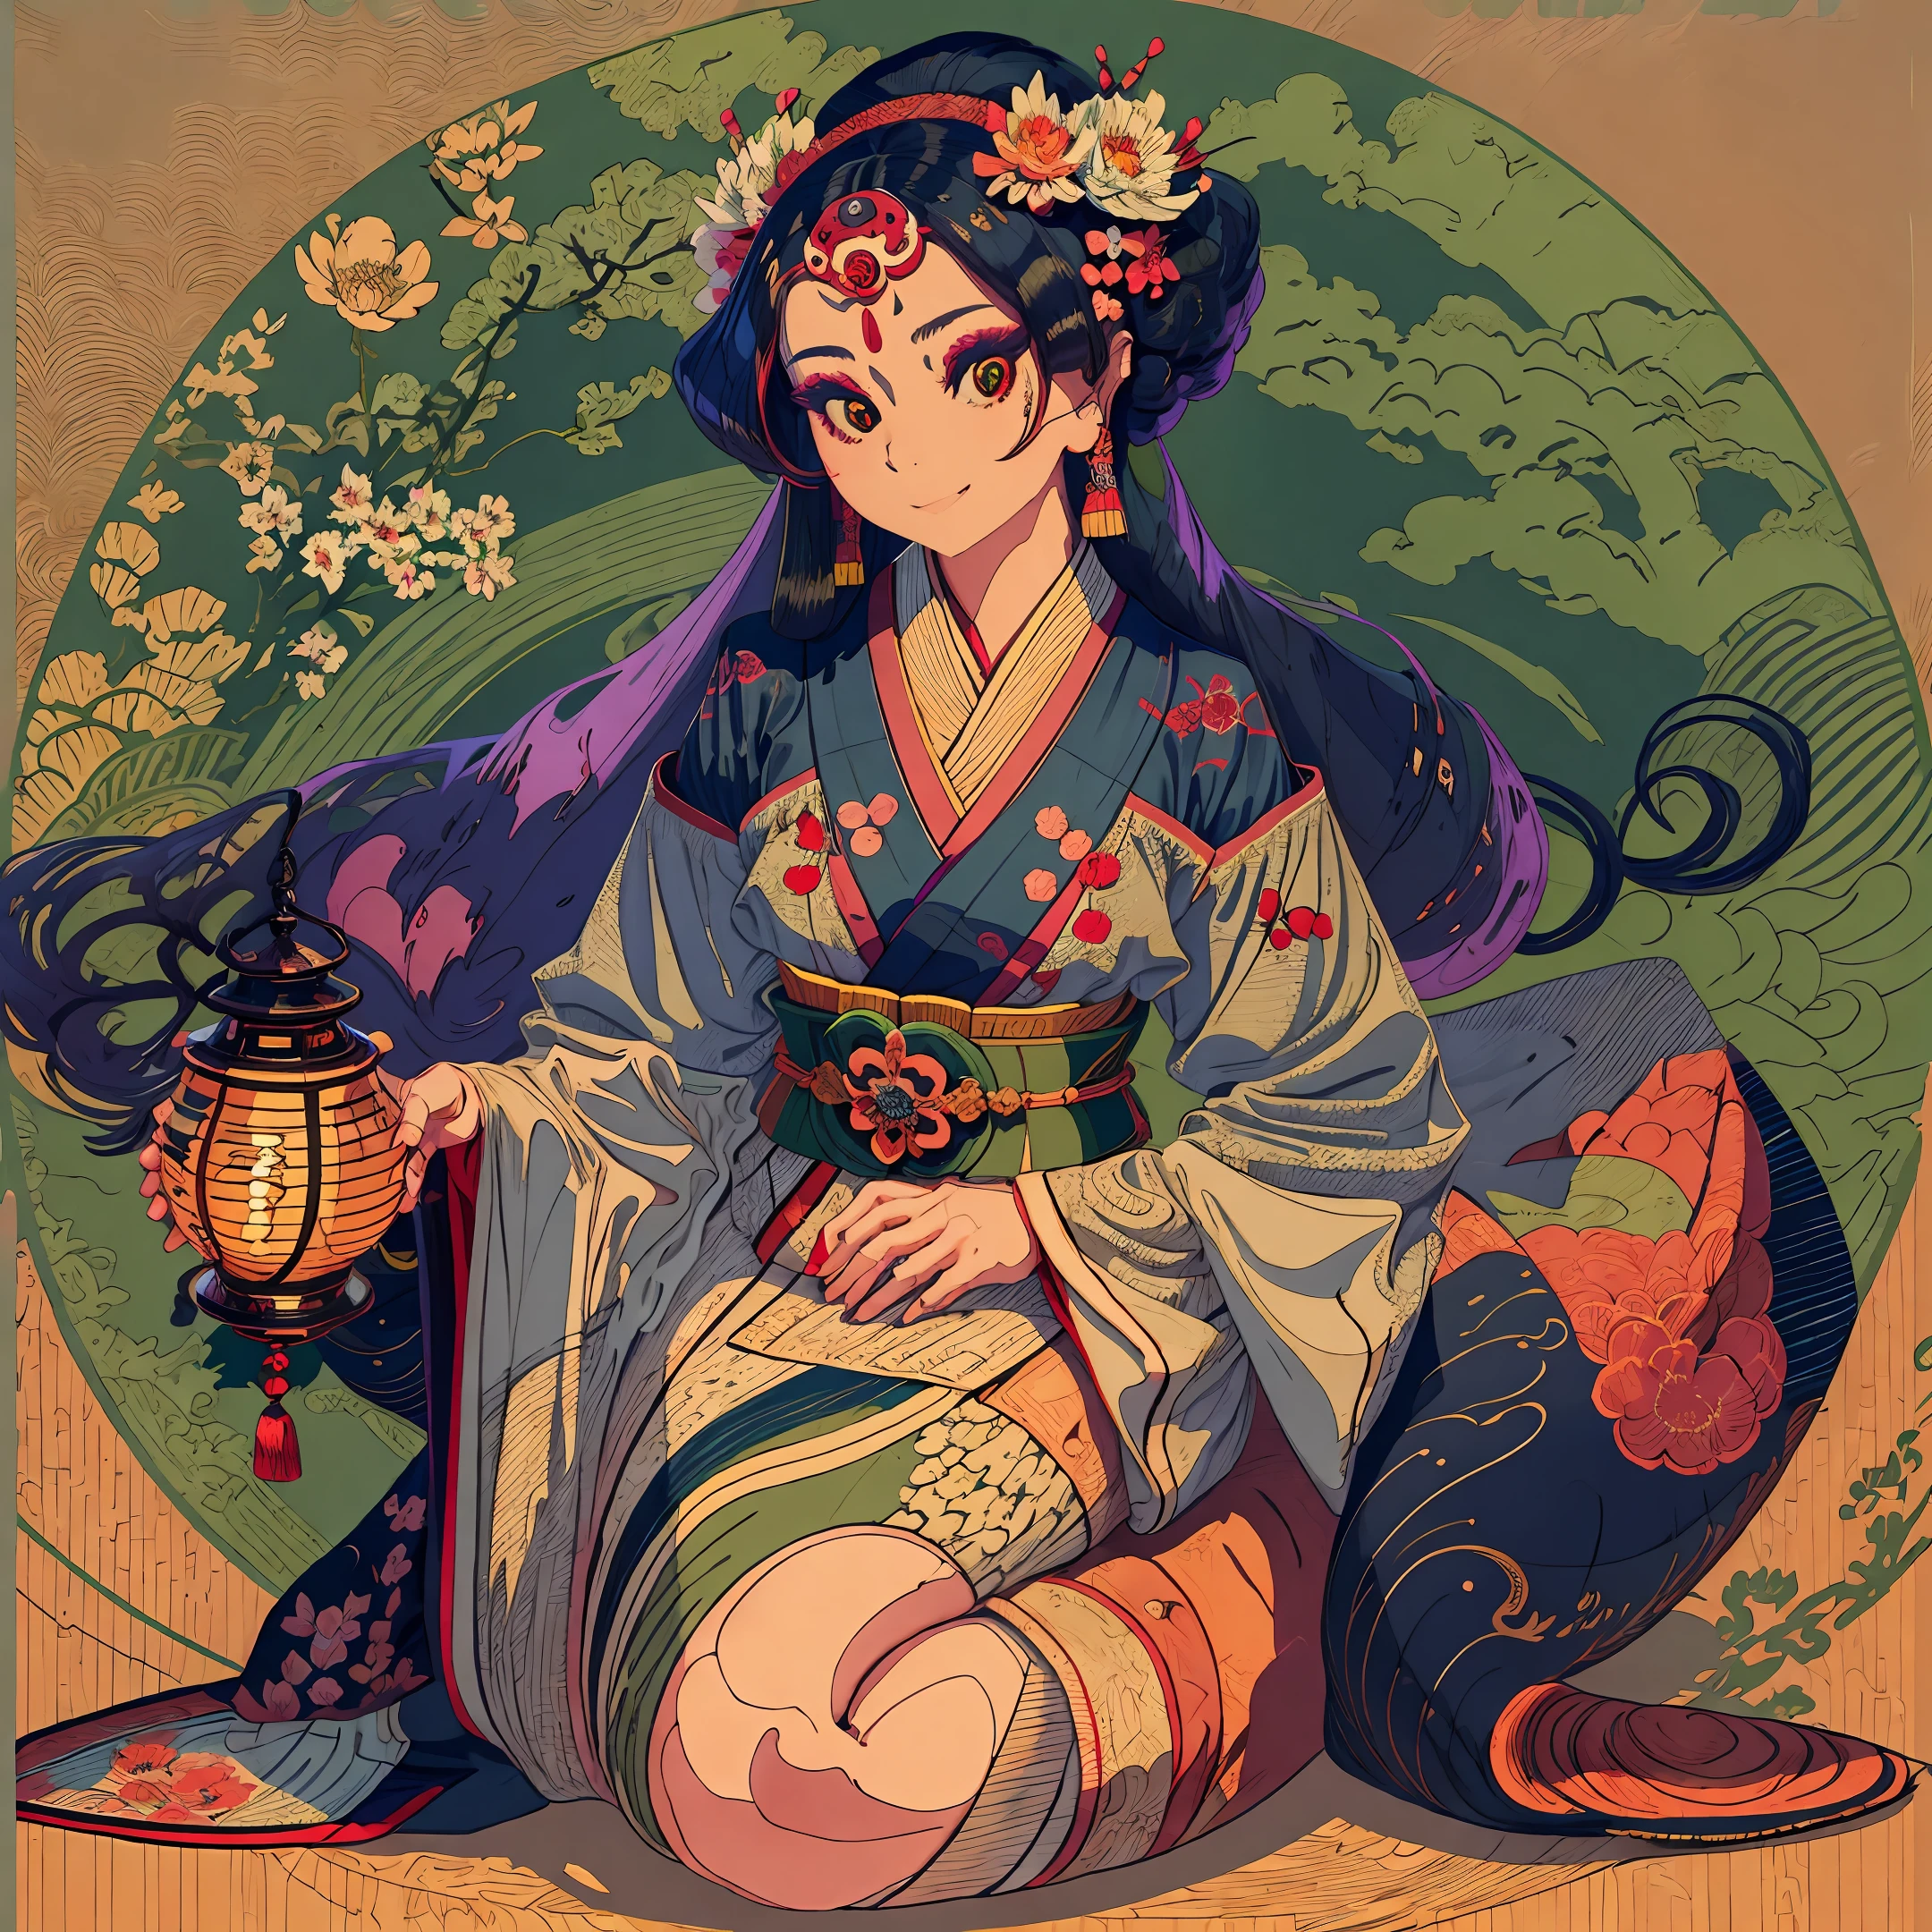 全身ショット, エロティックアートの傑作, 桜の花模様が描かれた美しい紺色の錦の着物を着た日本の芸者が、伝統的な座り方で座っている。, 胸の切り抜きには美しいデカールが描かれています, 彼女の頭には美しい伝統的な髪型と、美しい彫刻が施されたヘアピンが描かれている。,  詳しく見ると、目は明るい緑色です, 顔は細部まで美しい楕円形で、整った顔立ちをしている, 気分は微笑み, 目が笑う, 彼女の手の中に. 芸者は日本の撥弦楽器で、彼女はそれを演奏する。, 照明は控えめです, 提灯が灯っている, 写真の詳細な詳細, 明確な焦点, 32K,  フォトリアリズムスタイル, フォトリアリスティック --auto --s2